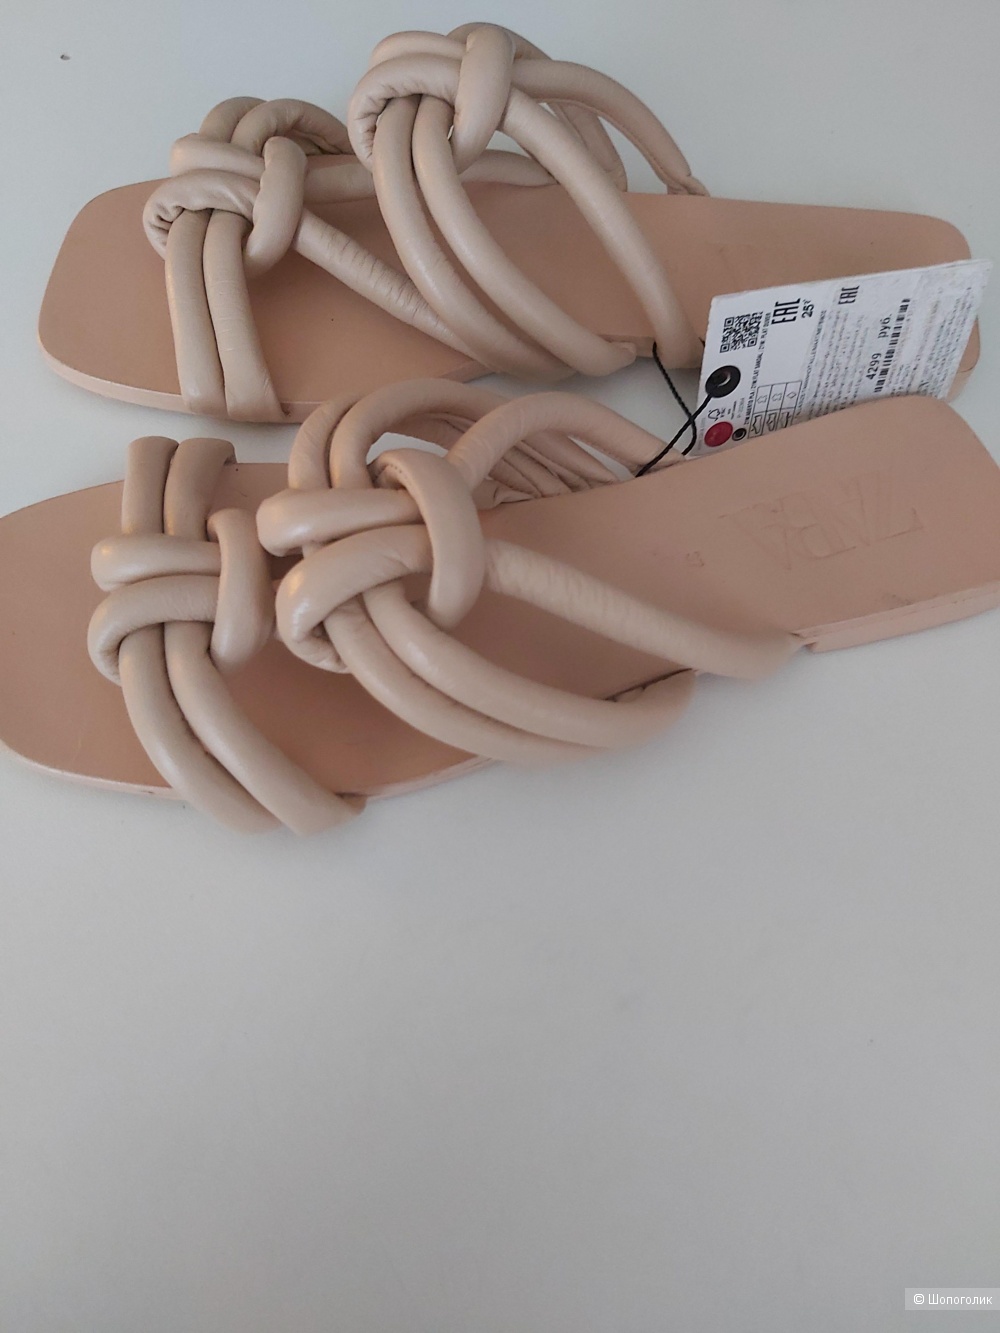 Кожаные шлепанцы/сандалии Zara 36-37 размер